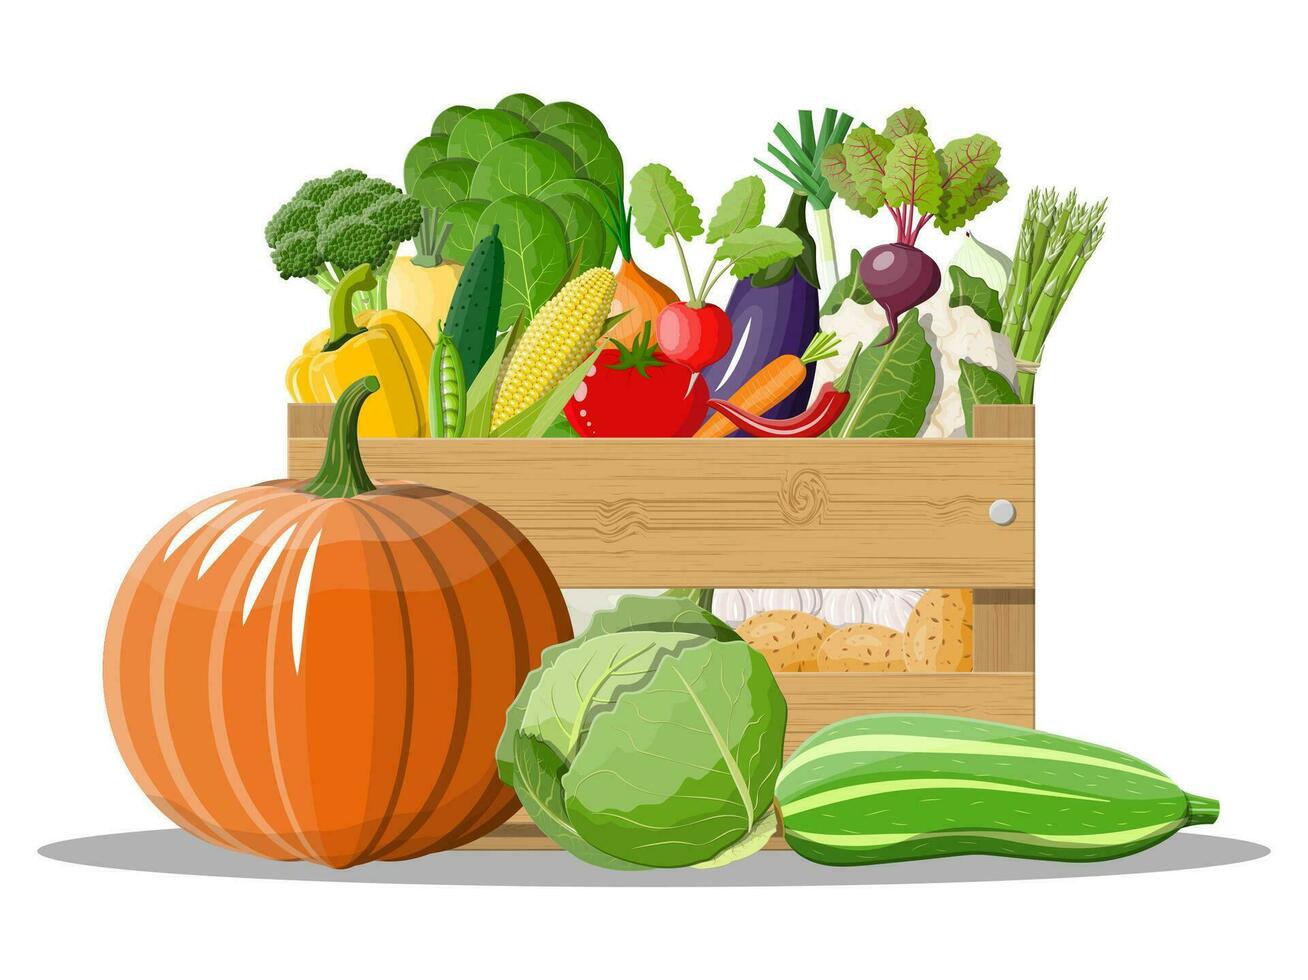 houten doos vol van groenten. ui, aubergine, kool, peper, pompoen, komkommer, tomaat wortel en andere groenten. biologisch gezond voedsel. vegetarisch voeding. vector illustratie in vlak stijl